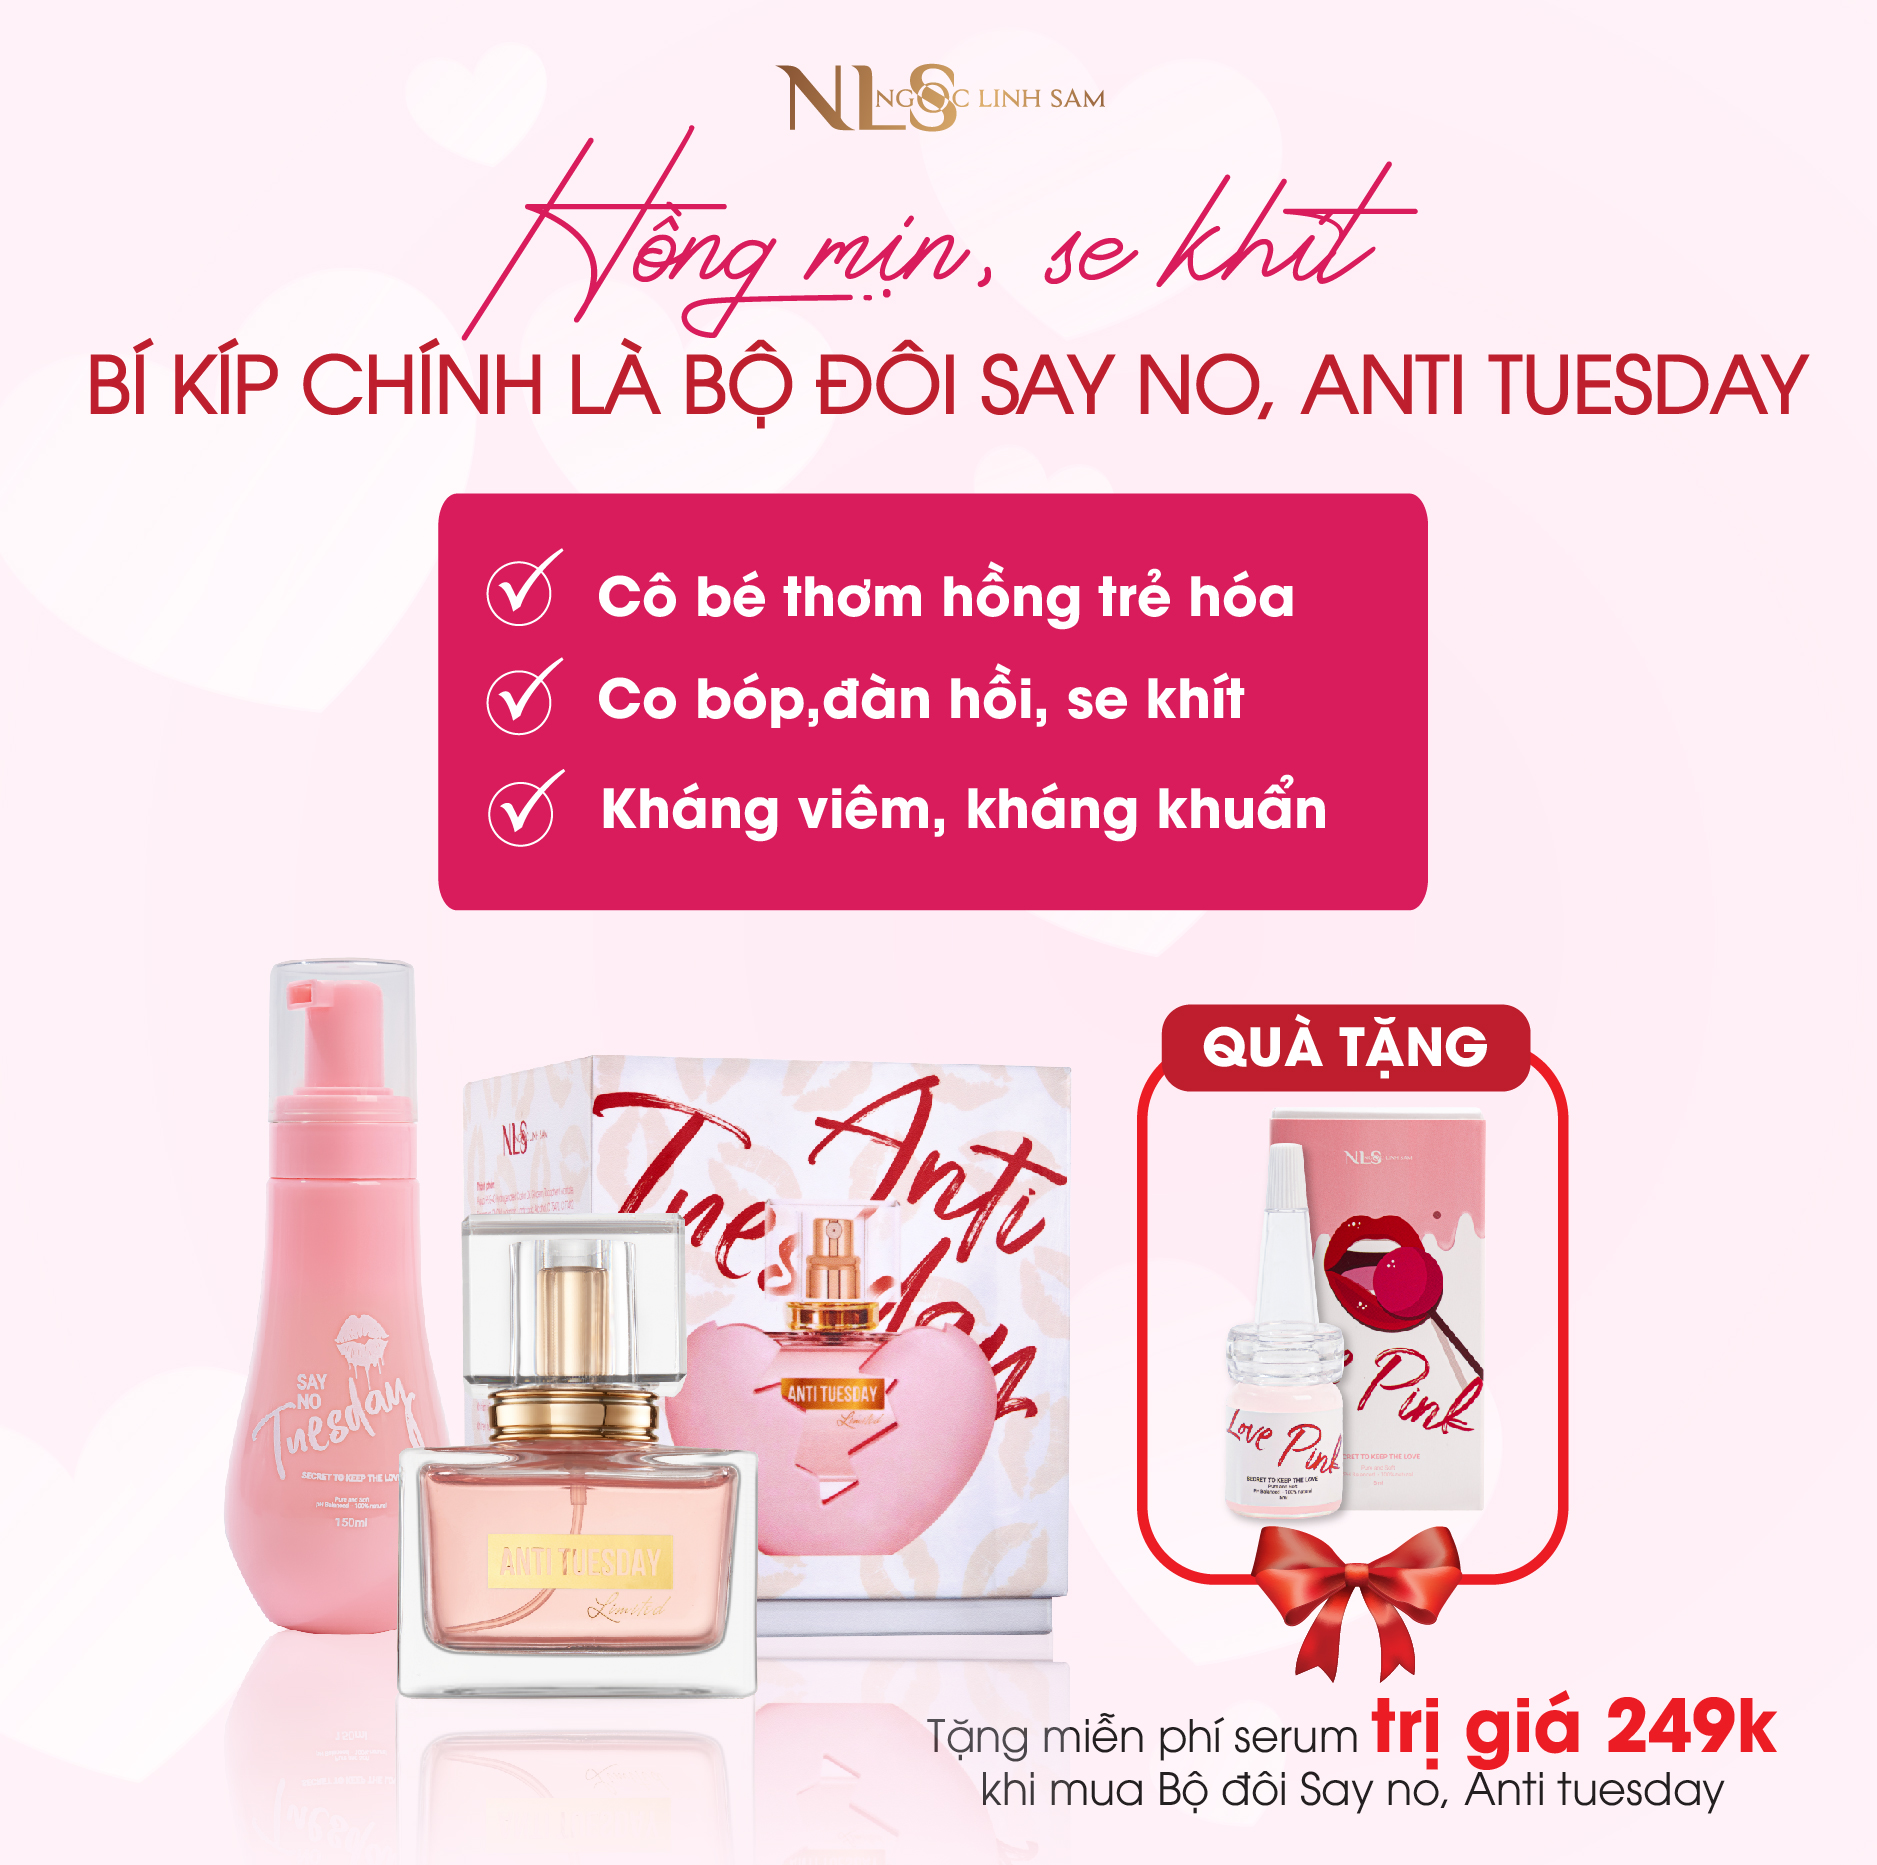 Dung Dịch Vệ Sinh Say No Tuesday & Nước Hoa Xịt Anti Tuesday - Combo Cho 